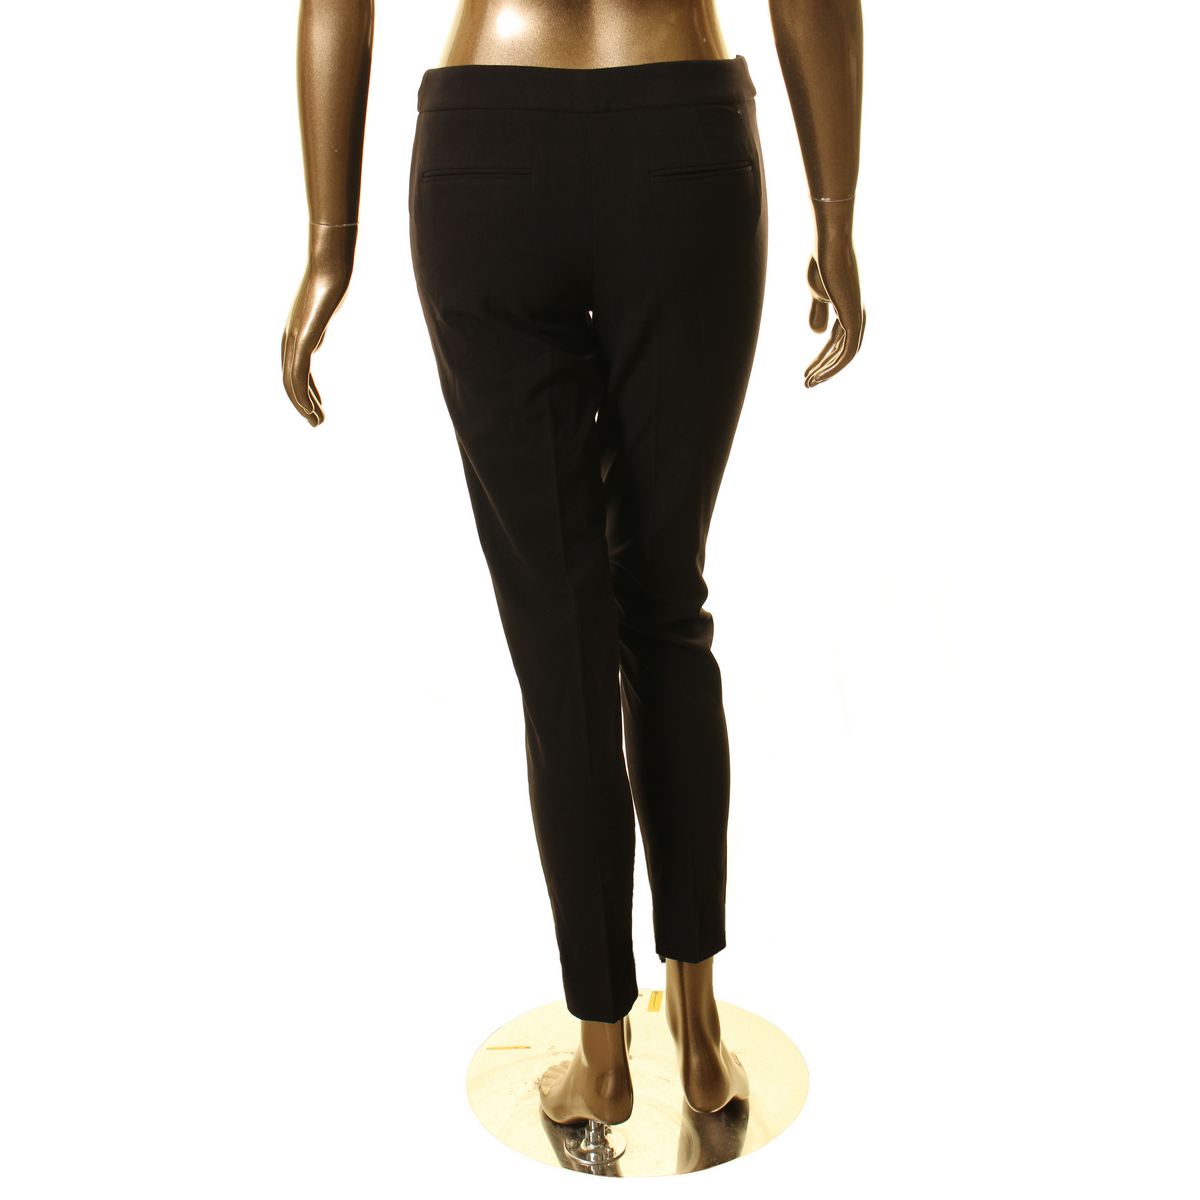 Anne Klein Womens Black Slim Leg Office Wear Dress Pants Trousers 8 Bhfo 8104 For Sale Online Ebay